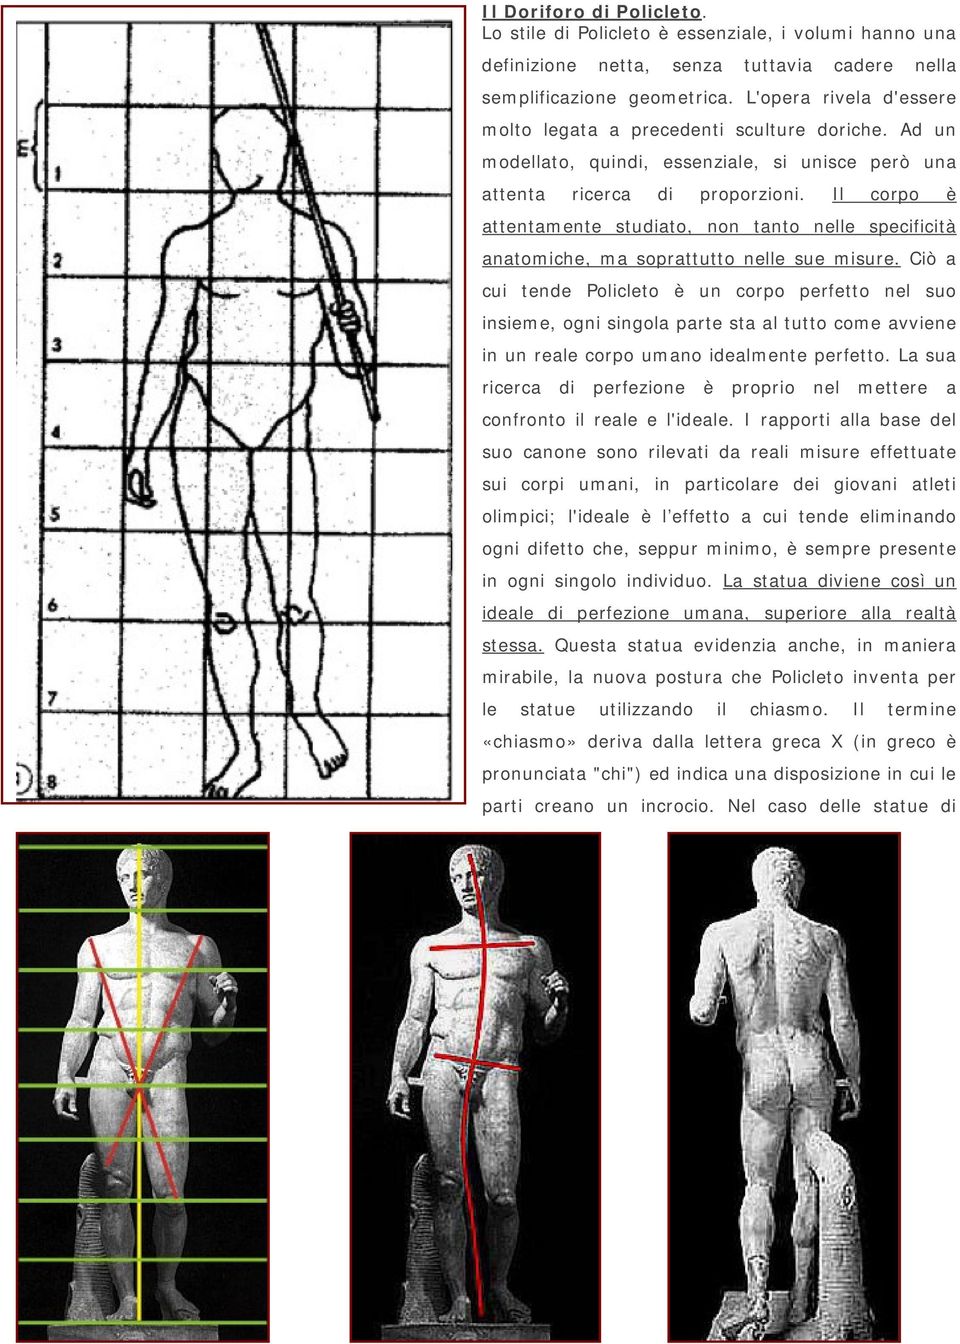 Il corpo è attentamente studiato, non tanto nelle specificità anatomiche, ma soprattutto nelle sue misure.